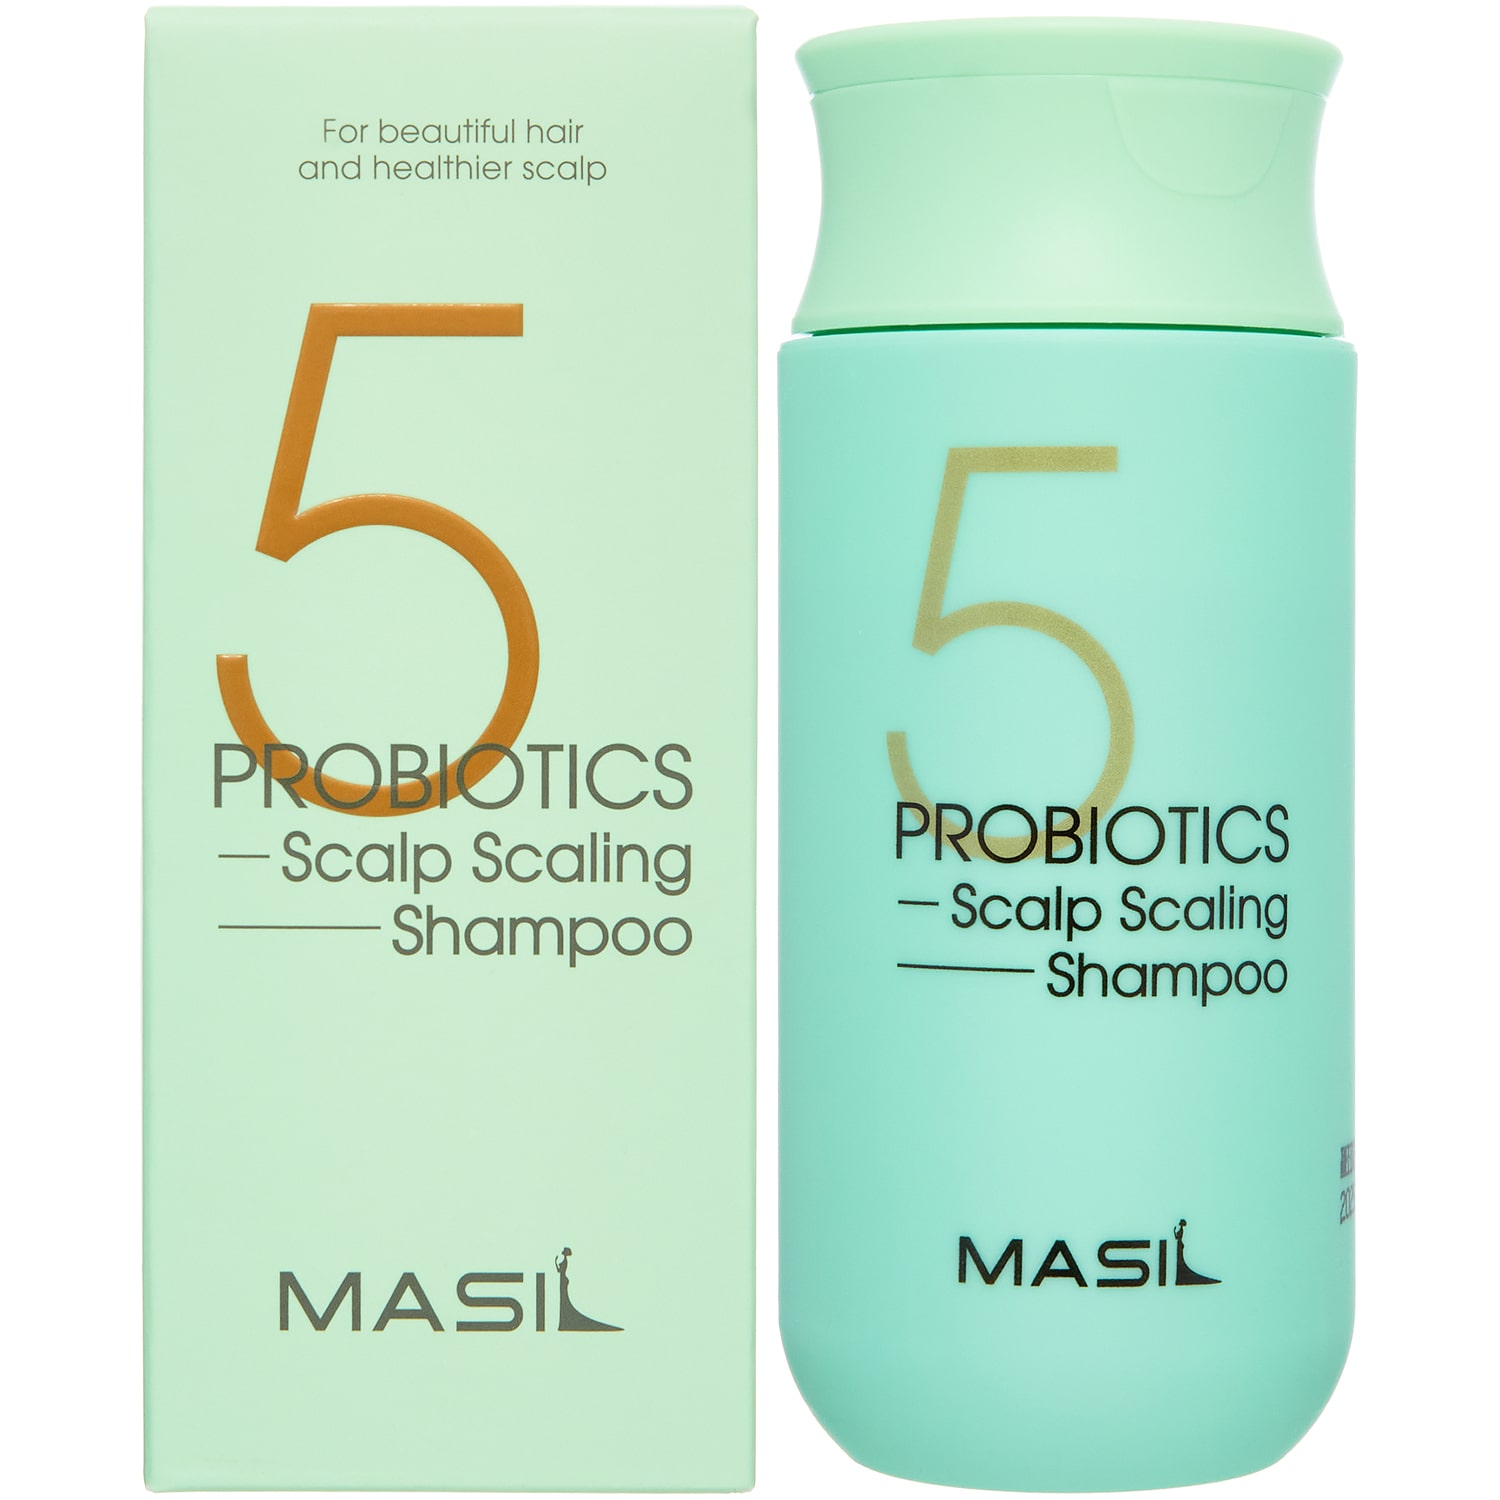 masil шампунь для глубокого очищения кожи головы probiotics scalp scaling shampoo 300 мл masil Masil Шампунь для глубокого очищения кожи головы Probiotics Scalp Scaling Shampoo, 150 мл (Masil, )